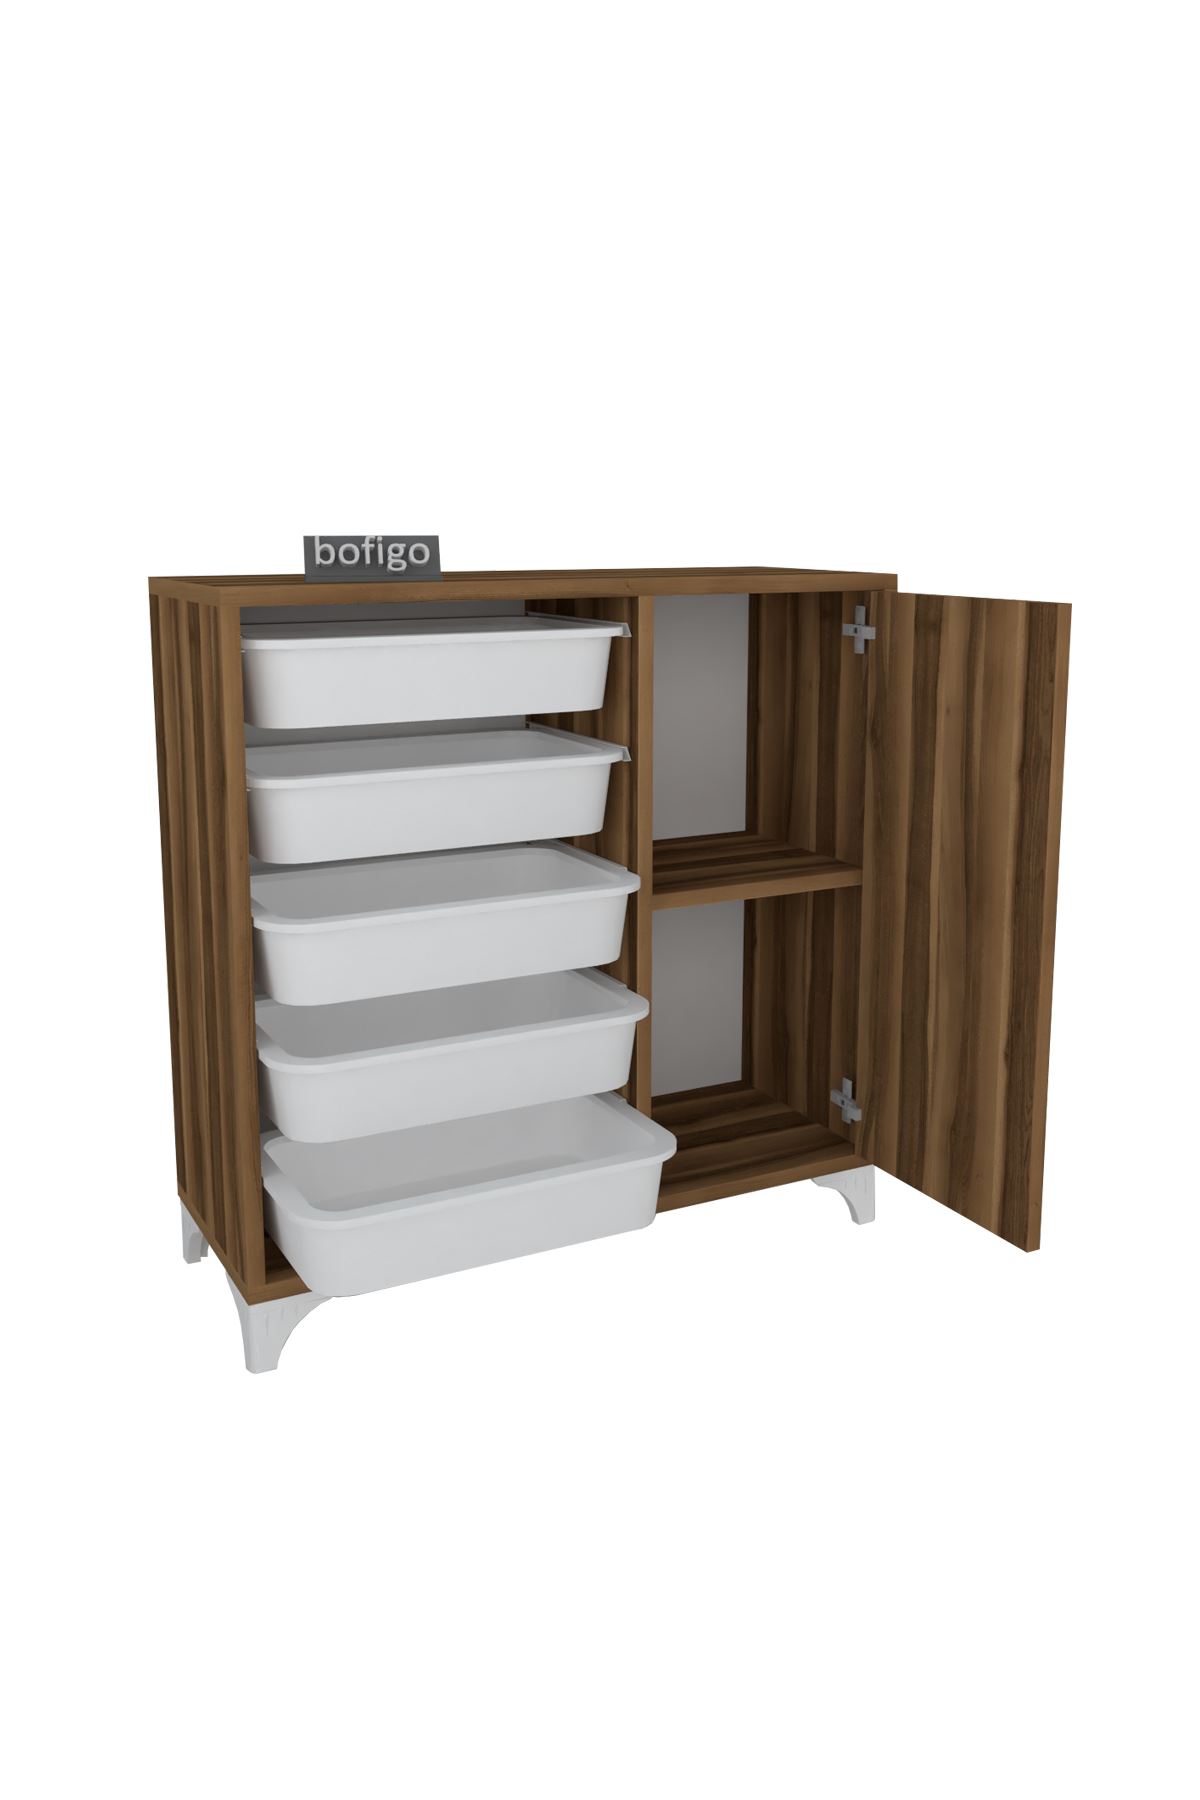 Bofigo 5 Basket Kitchen Cabinet Multi-Purpose Cabinet Crisper Pine